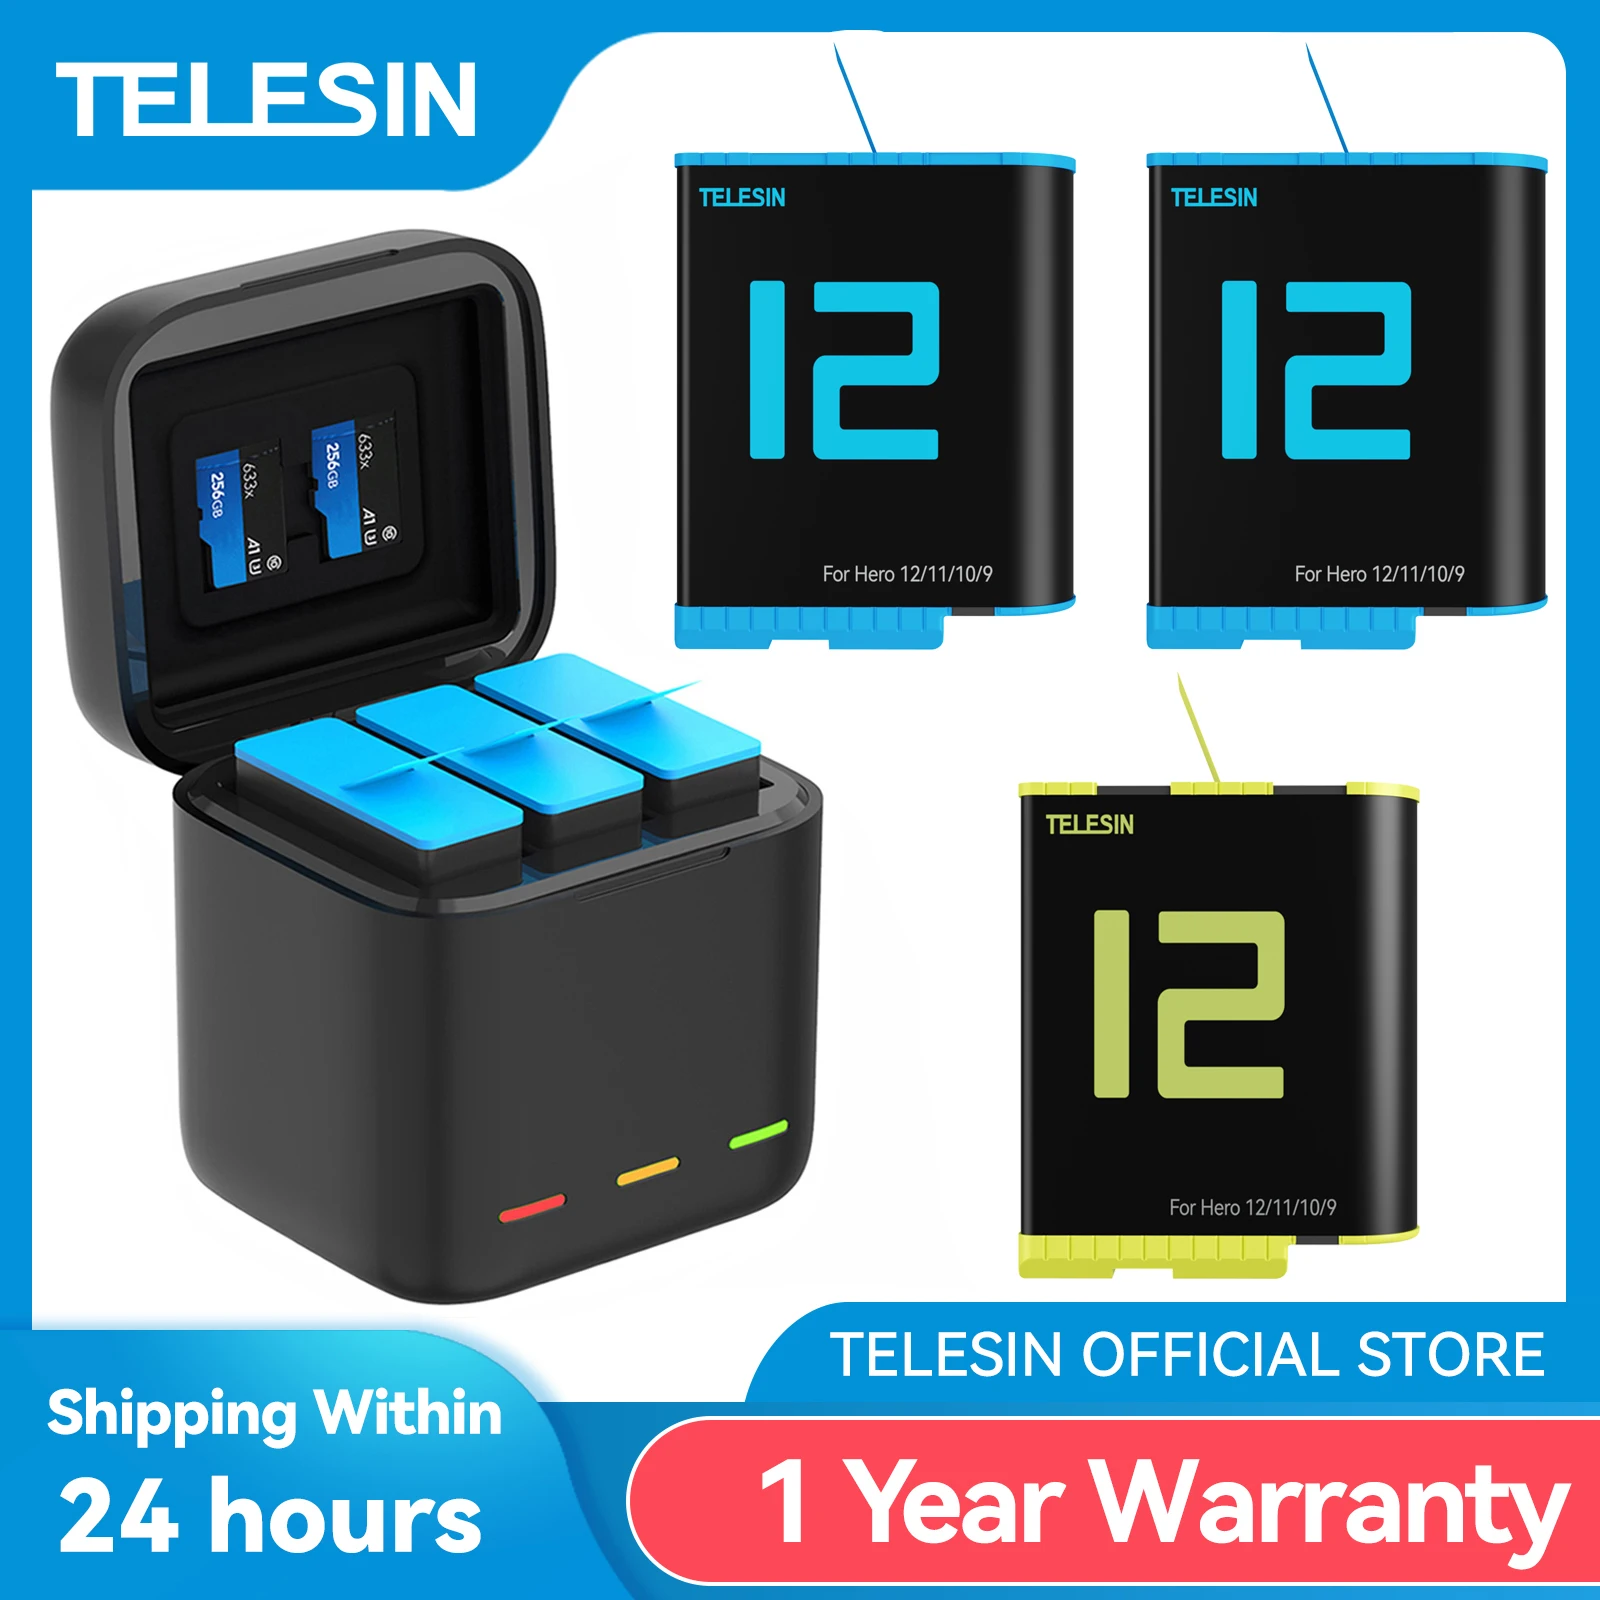 Telesin – Batterie 1750 Mah Pour Gopro Hero 11 10 9, 3